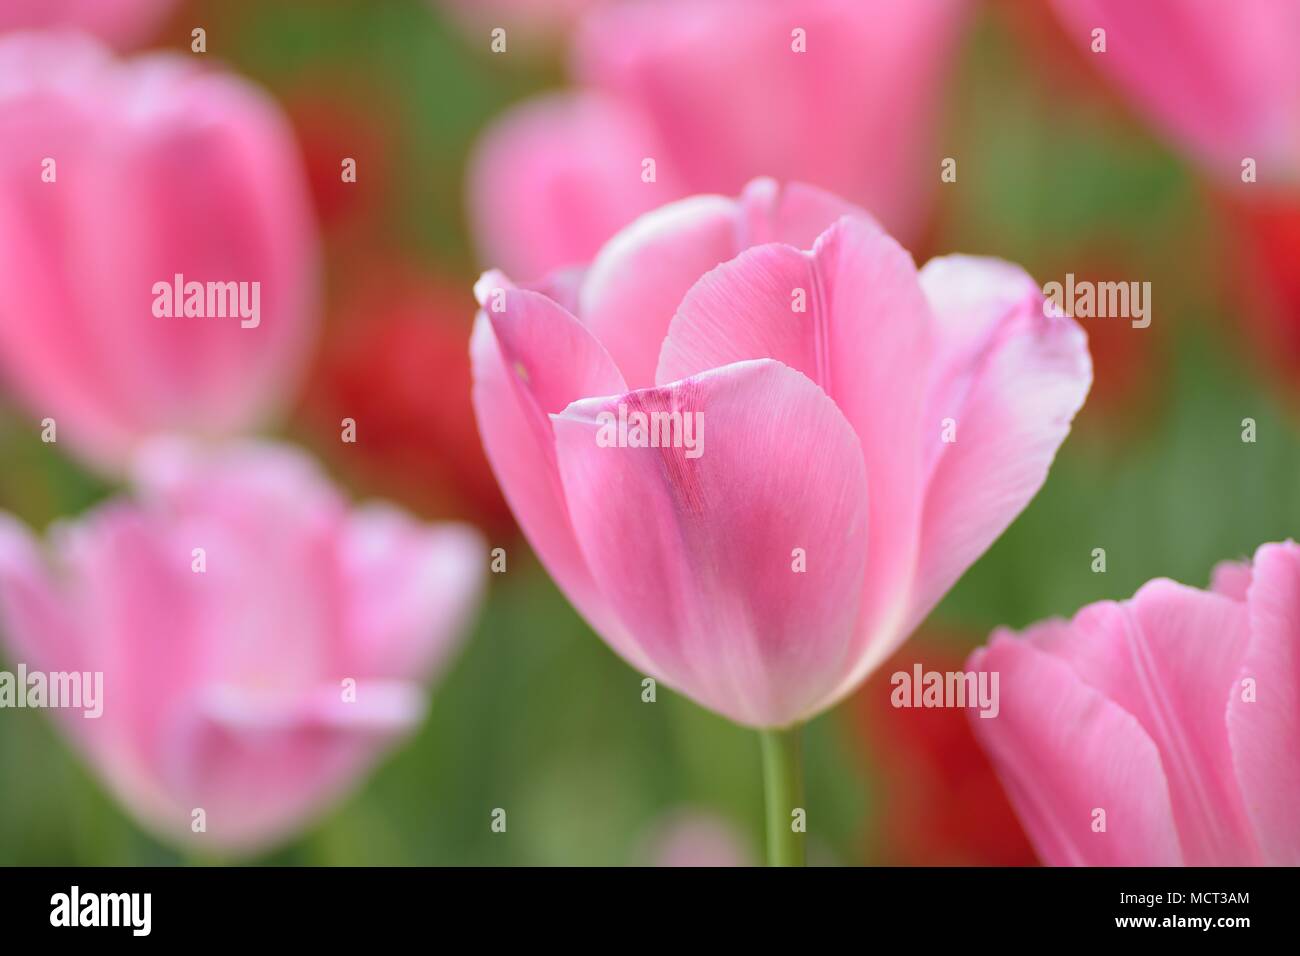 Macro background texture of Pink Tulip flowers in garden Stock Photo